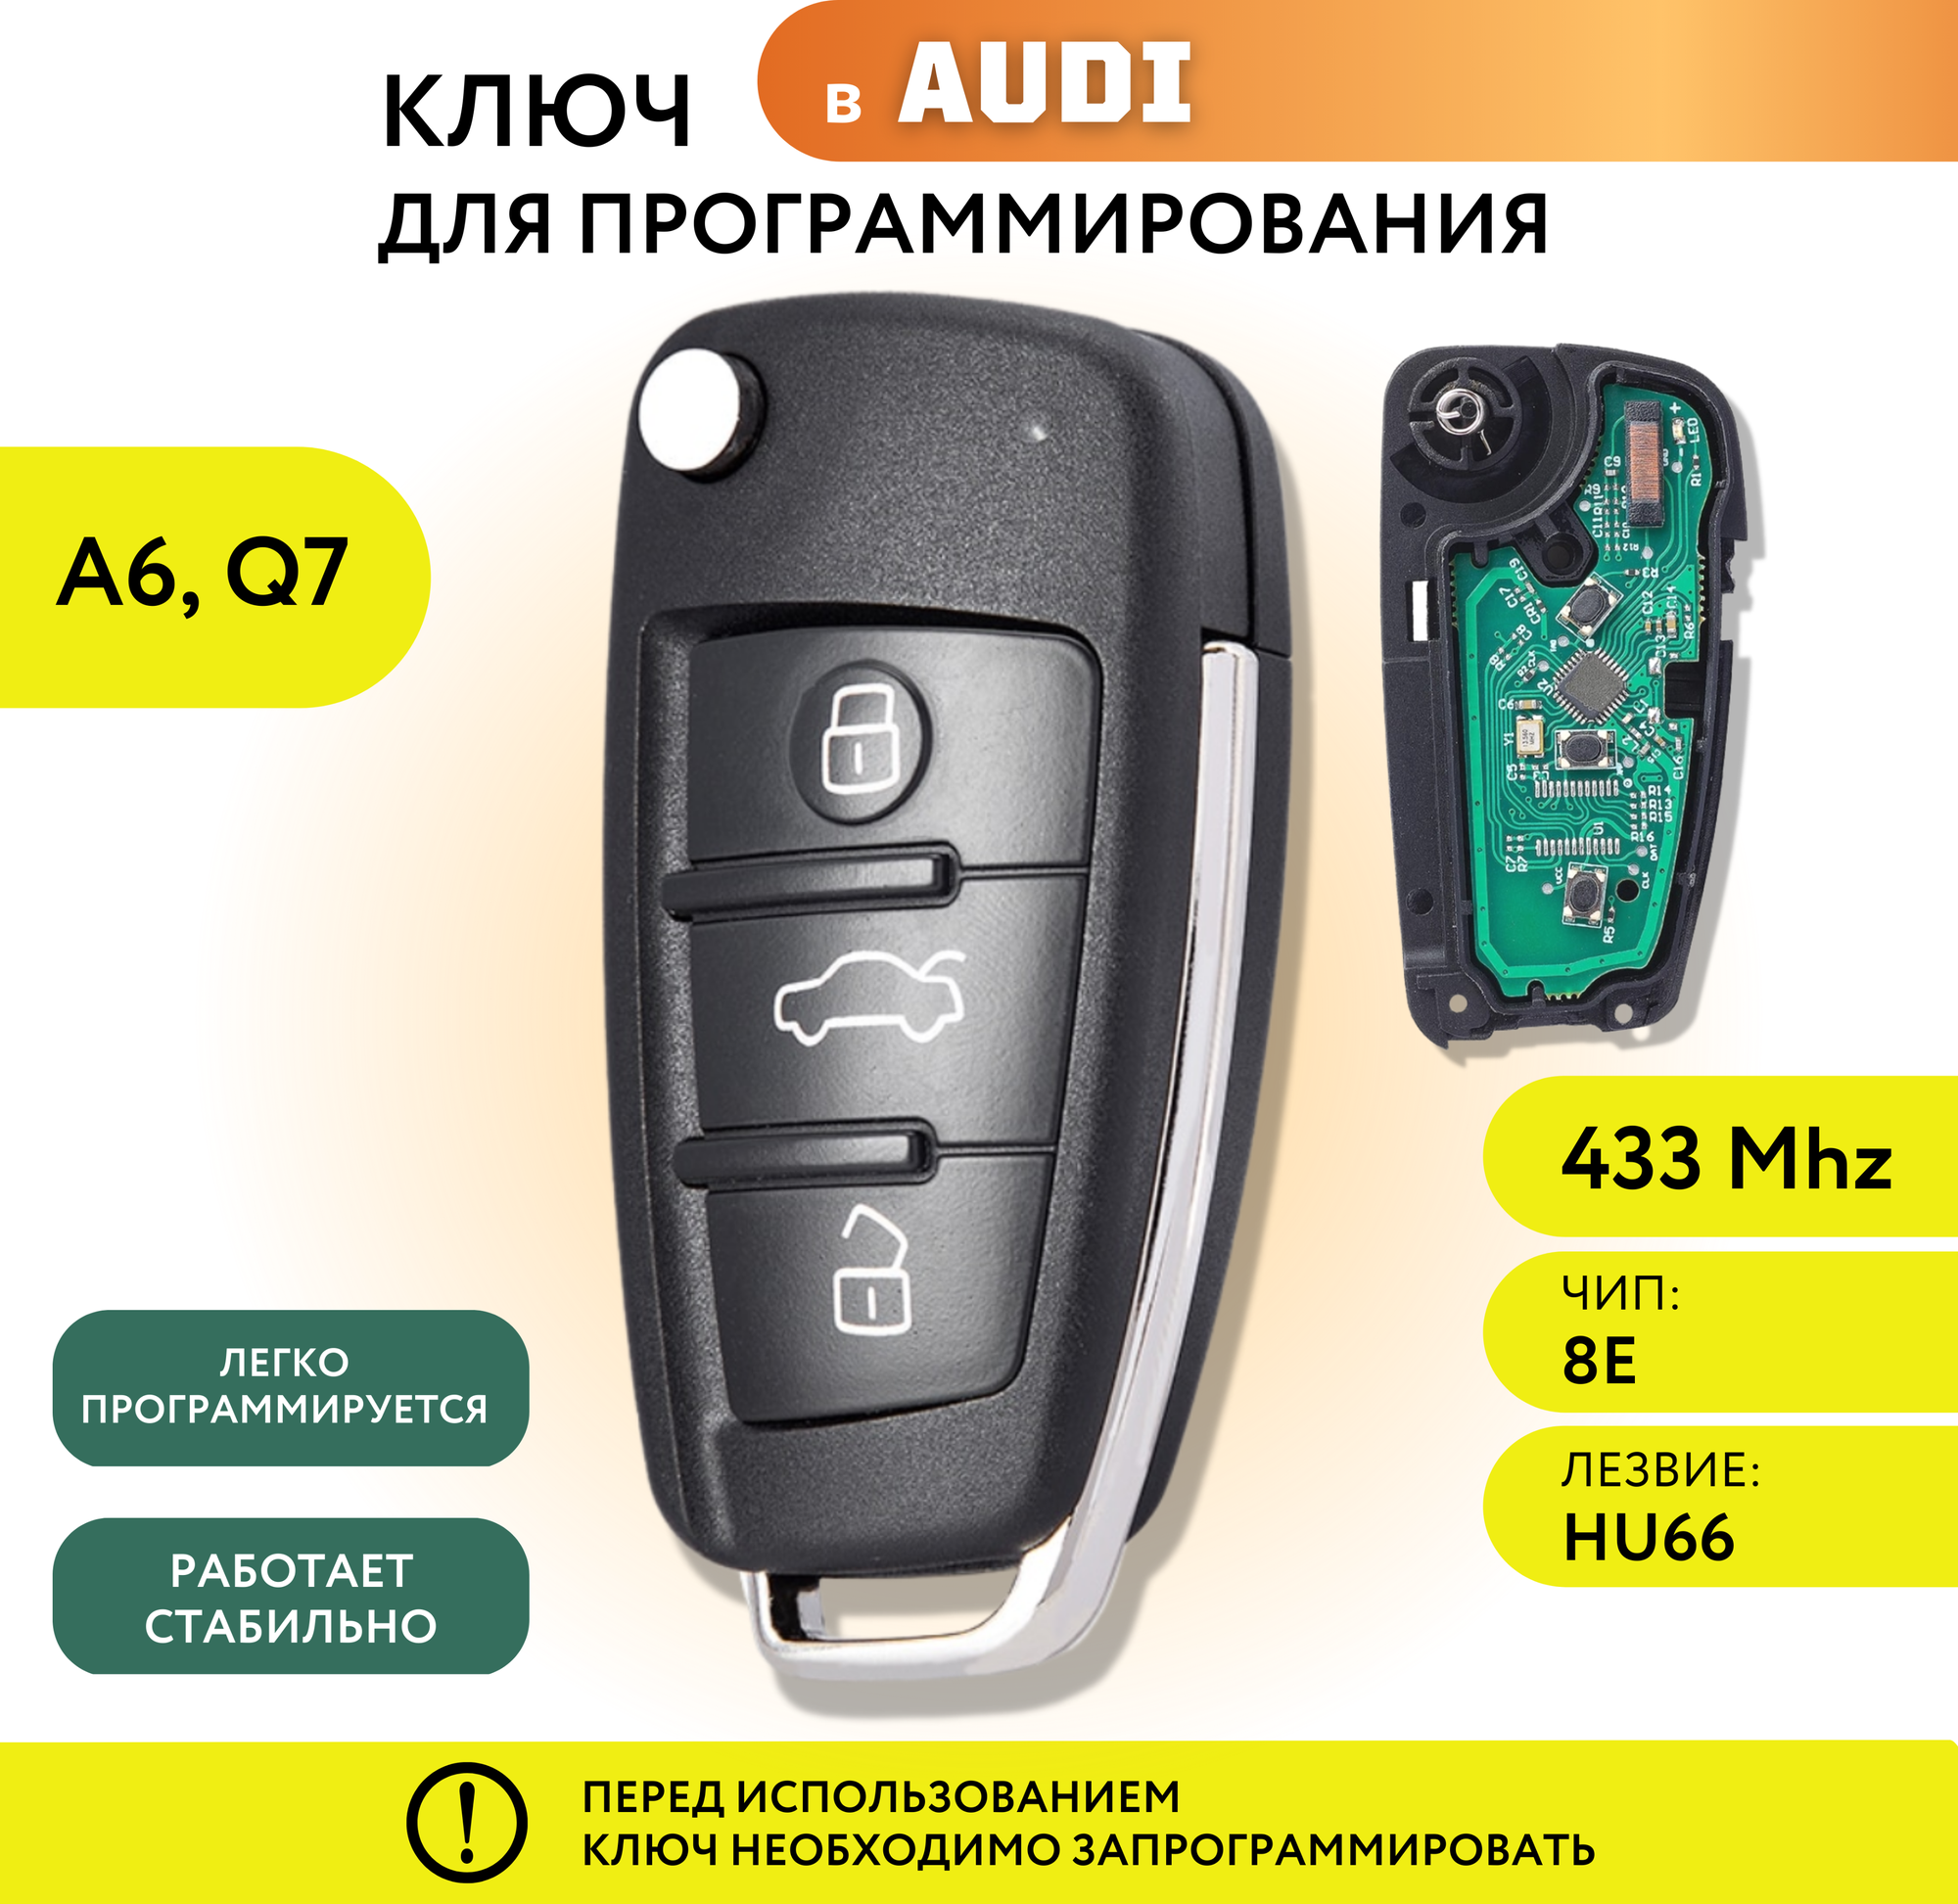 Ключ зажигания для Ауди A6 Q7 выкидной ключ для Audi c платой и чипом лезвие HU66